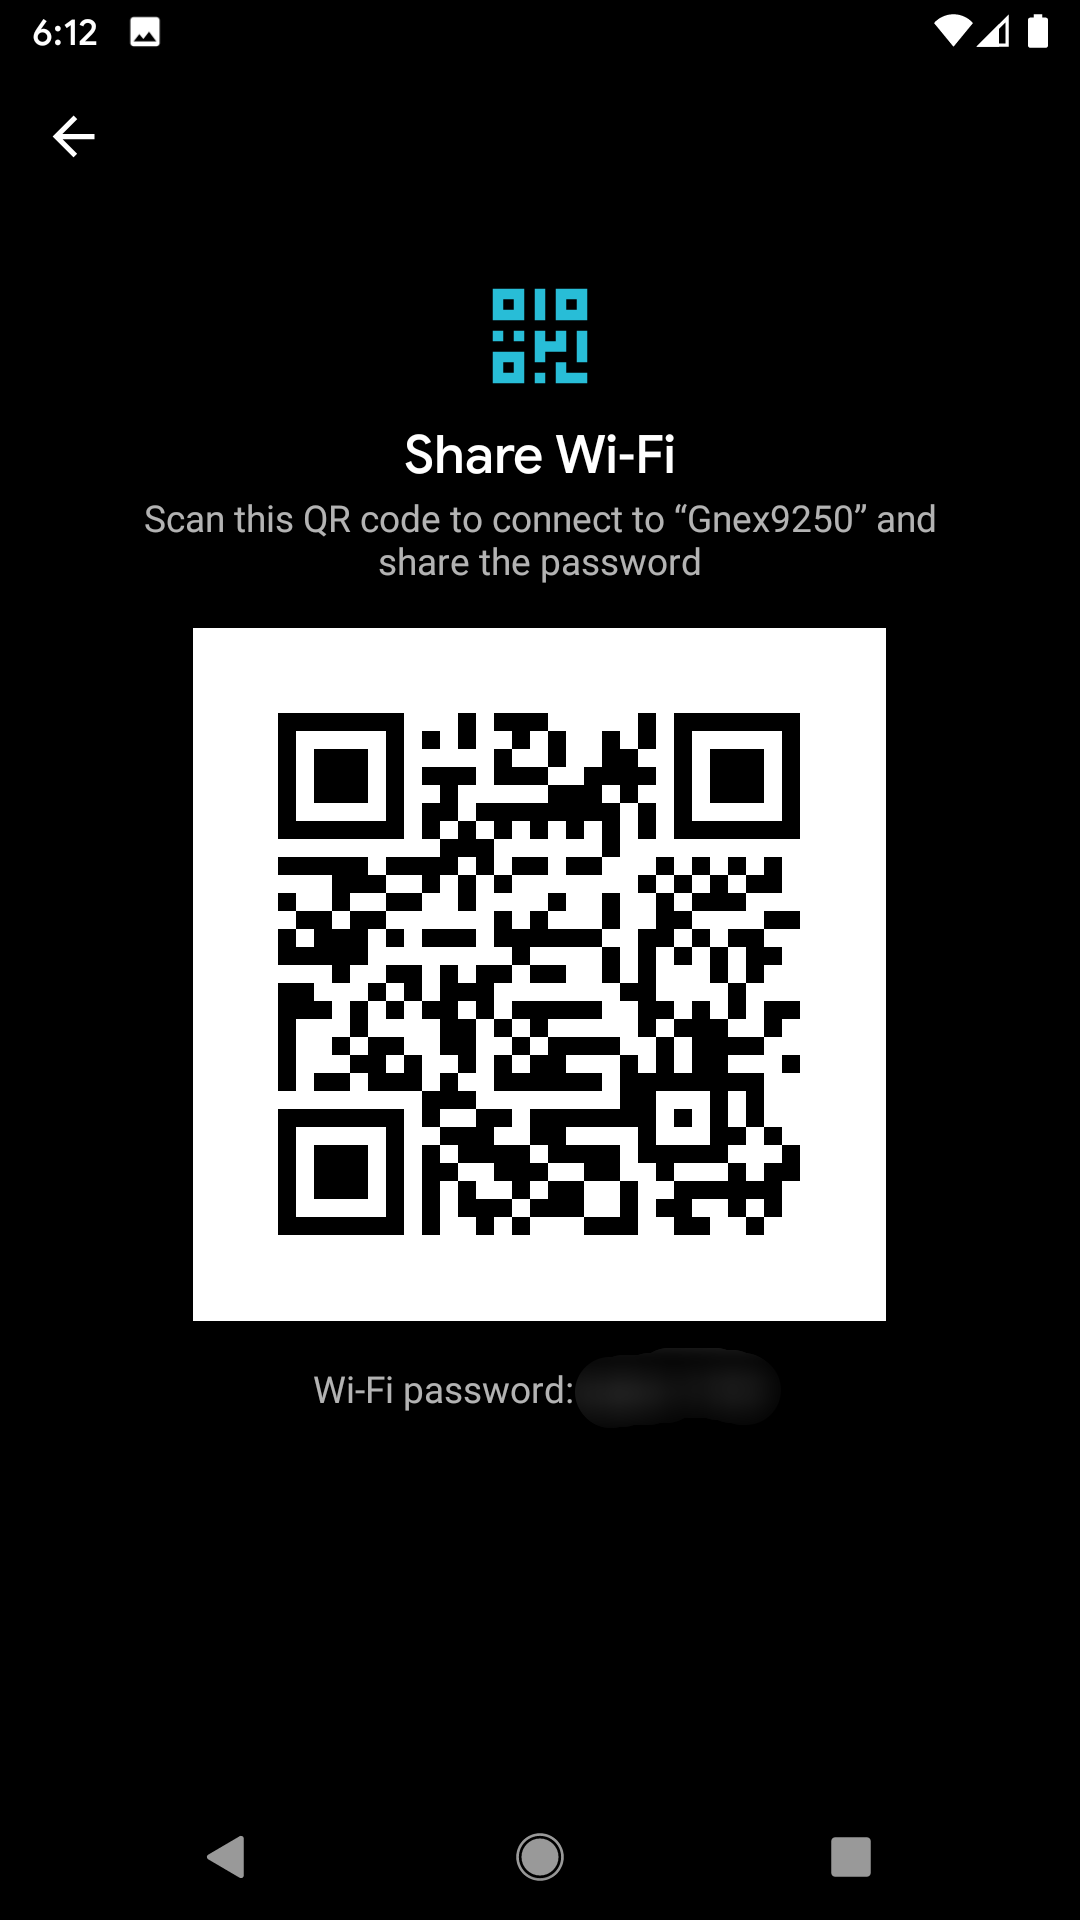 La clave de tu Wi-Fi en QR, una opcion para compartirla facilmente.